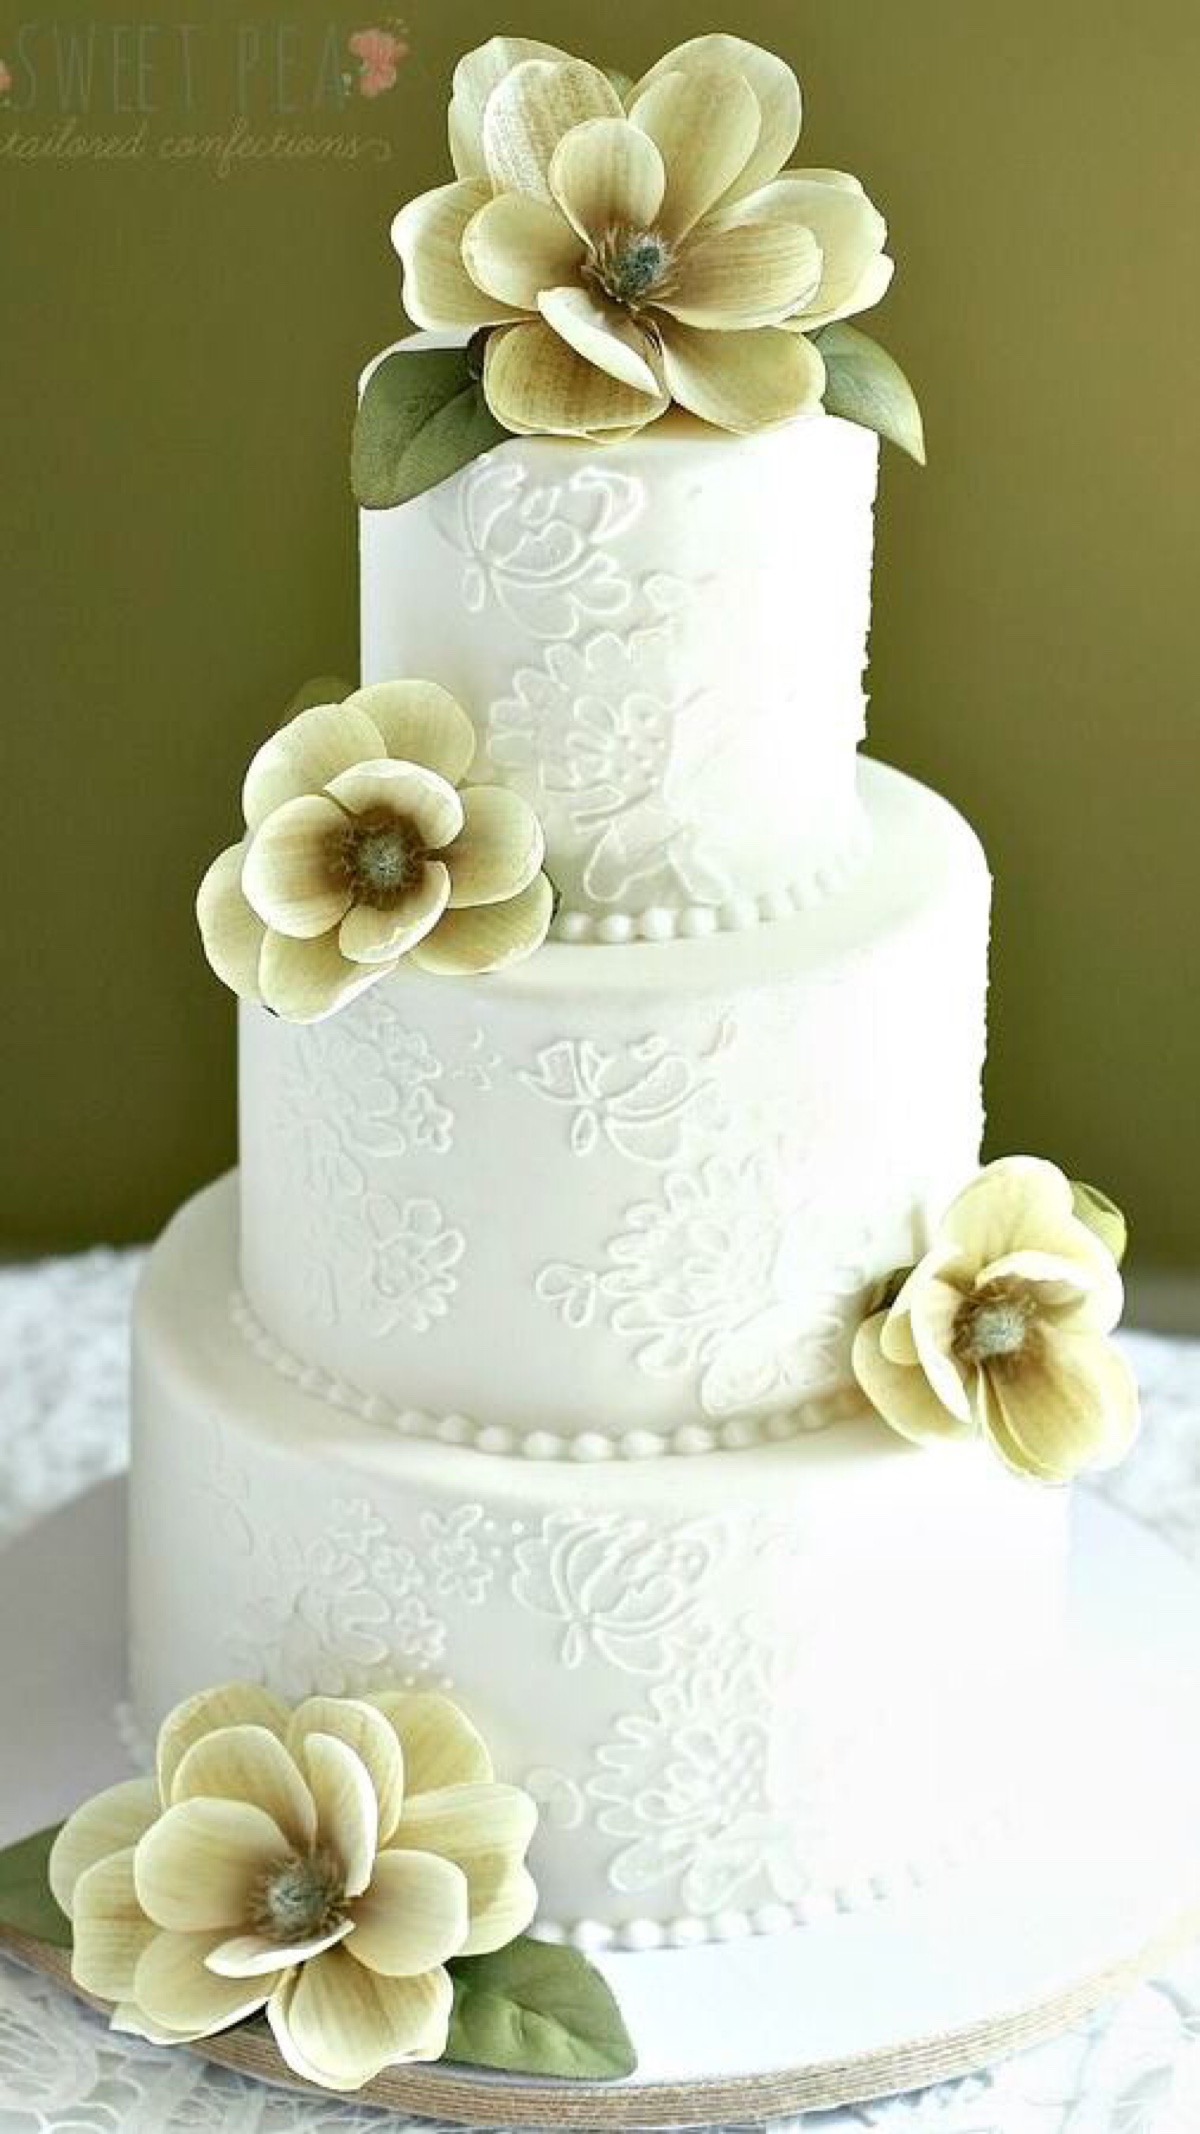 翻糖 蛋糕 生日 派对 创意 婚礼 鲜花